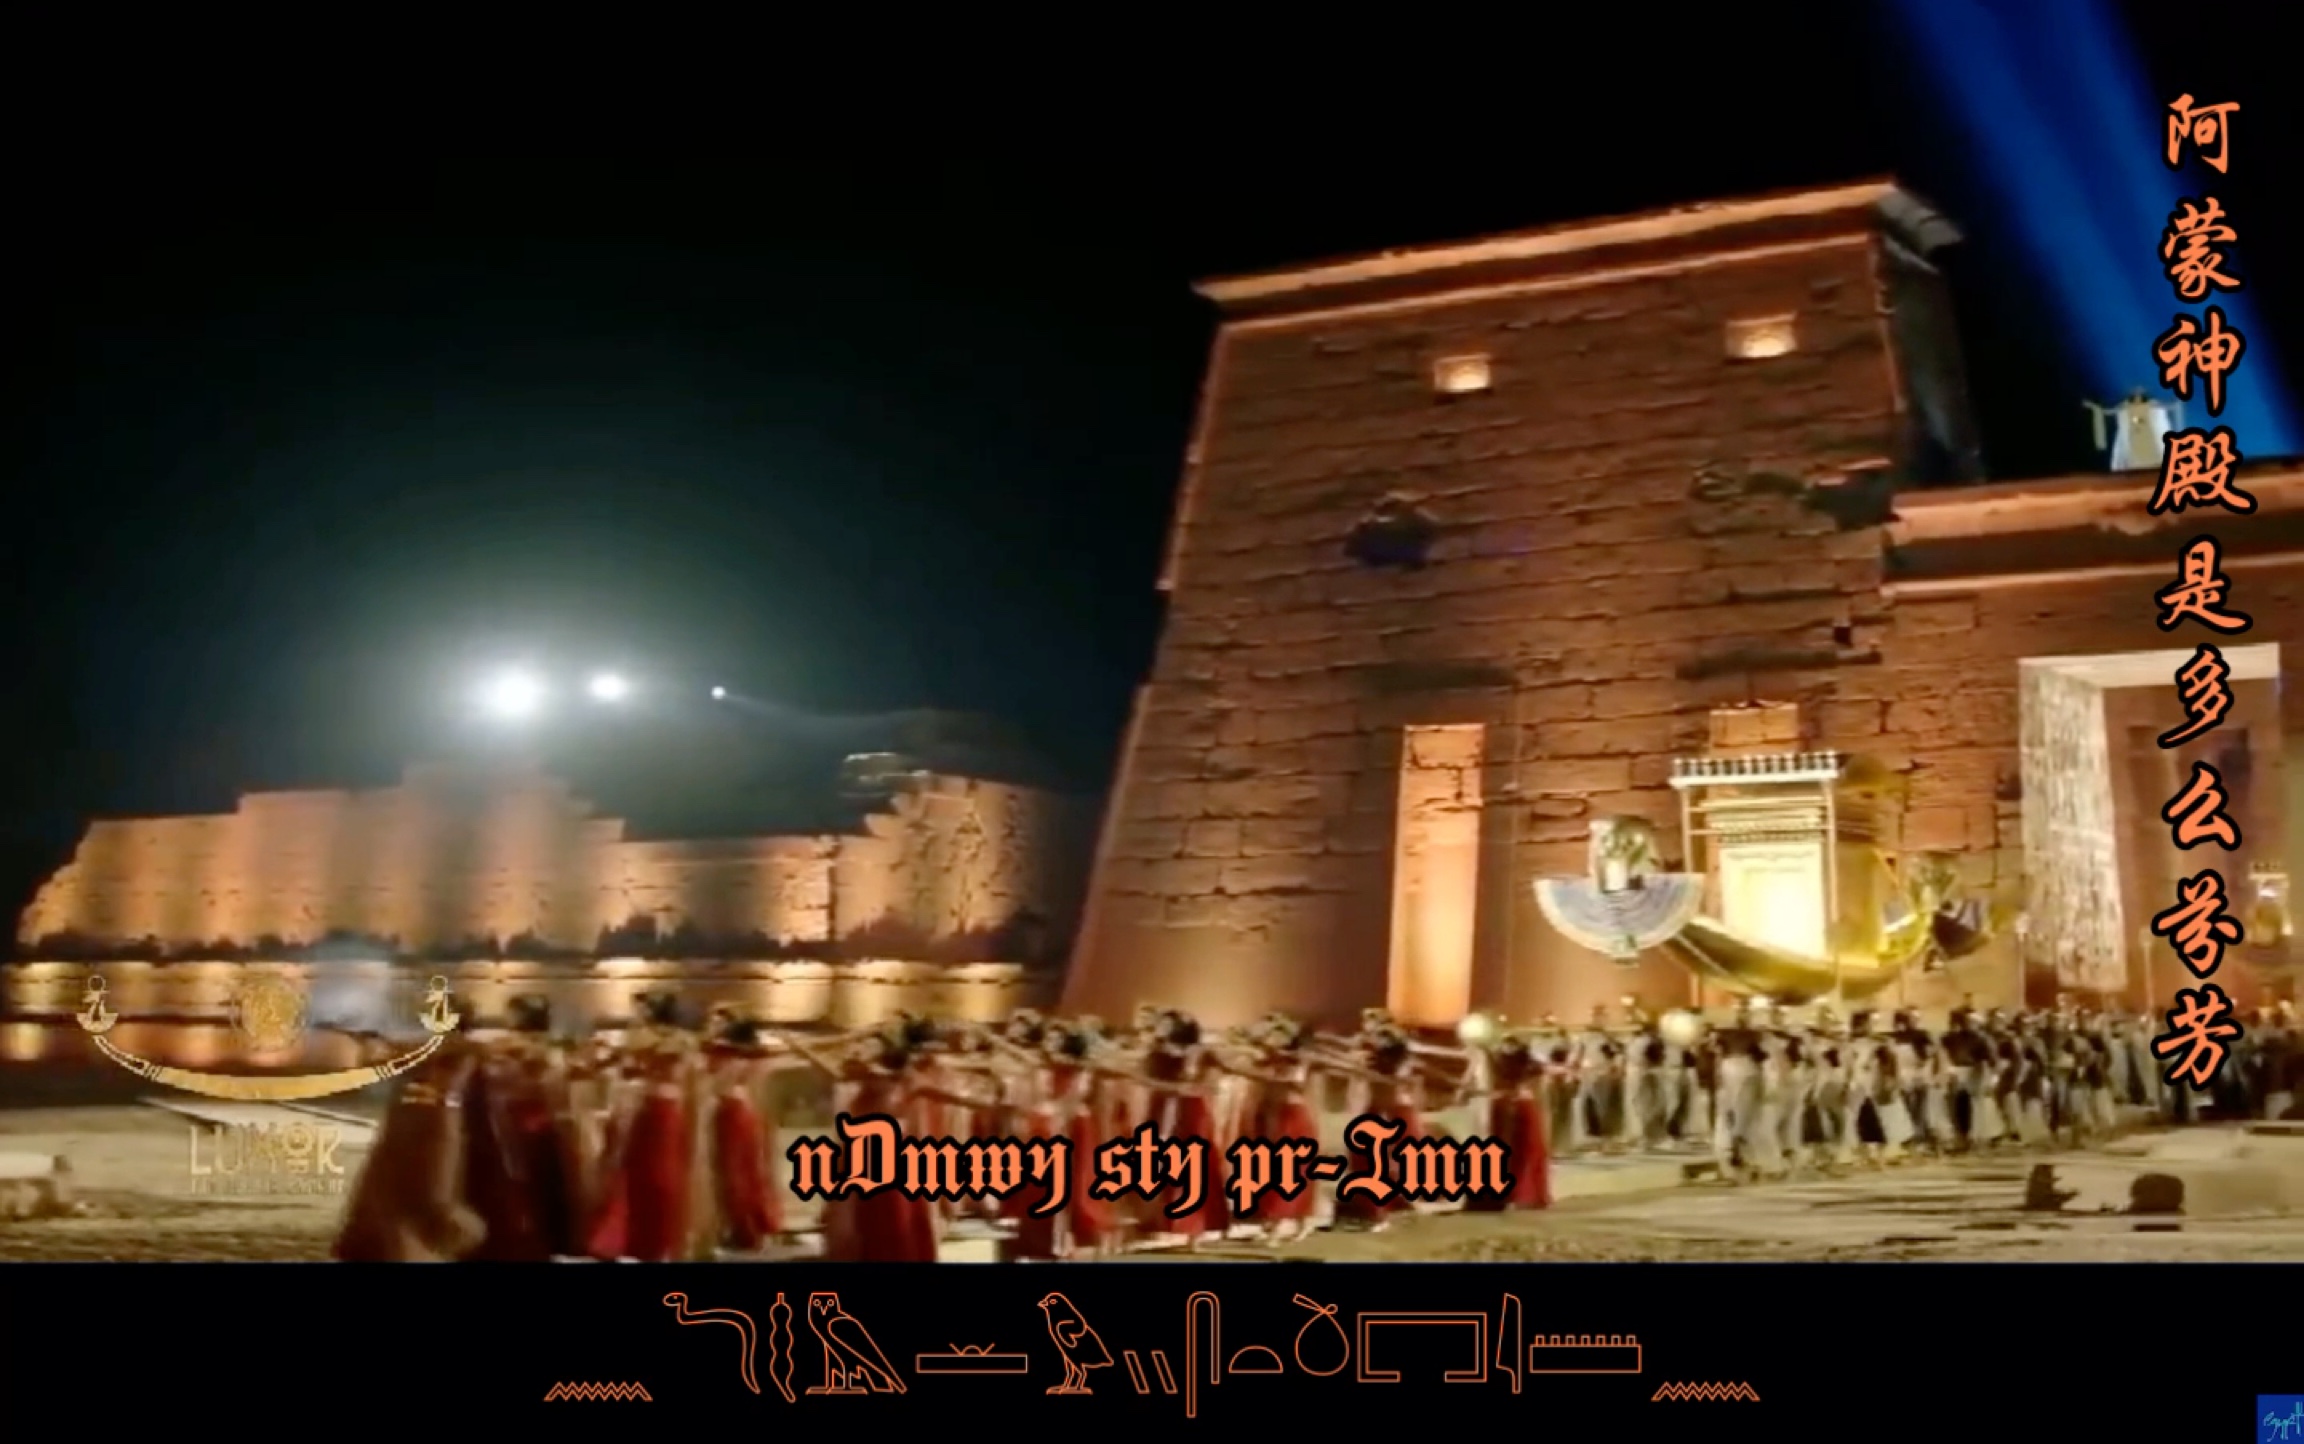 【古埃及语/阿蒙颂歌】“斯芬克斯大道重启仪式”中的古埃及语歌曲究竟唱了什么内容？